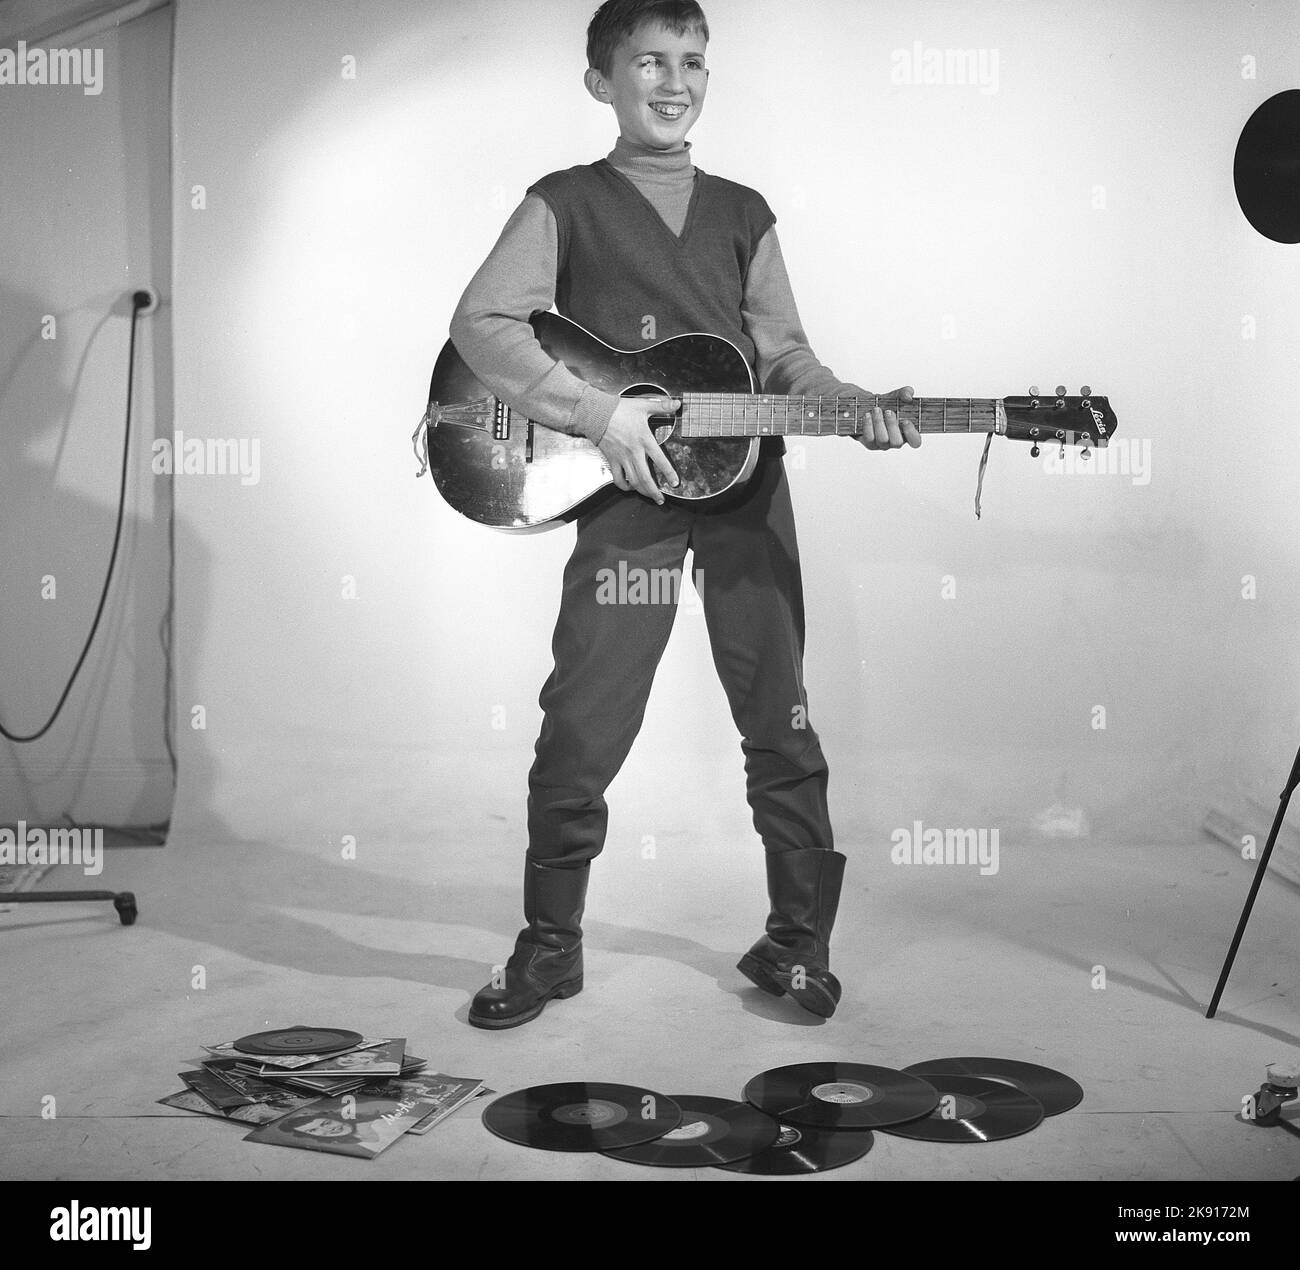 Garçon dans les 1950s. Un garçon est photographié dans un studio et joue de la guitare, peut-être avec les artistes Rock n' roll de l'époque à l'esprit. Suède 1959 Kristoffersson réf. CF62 Banque D'Images